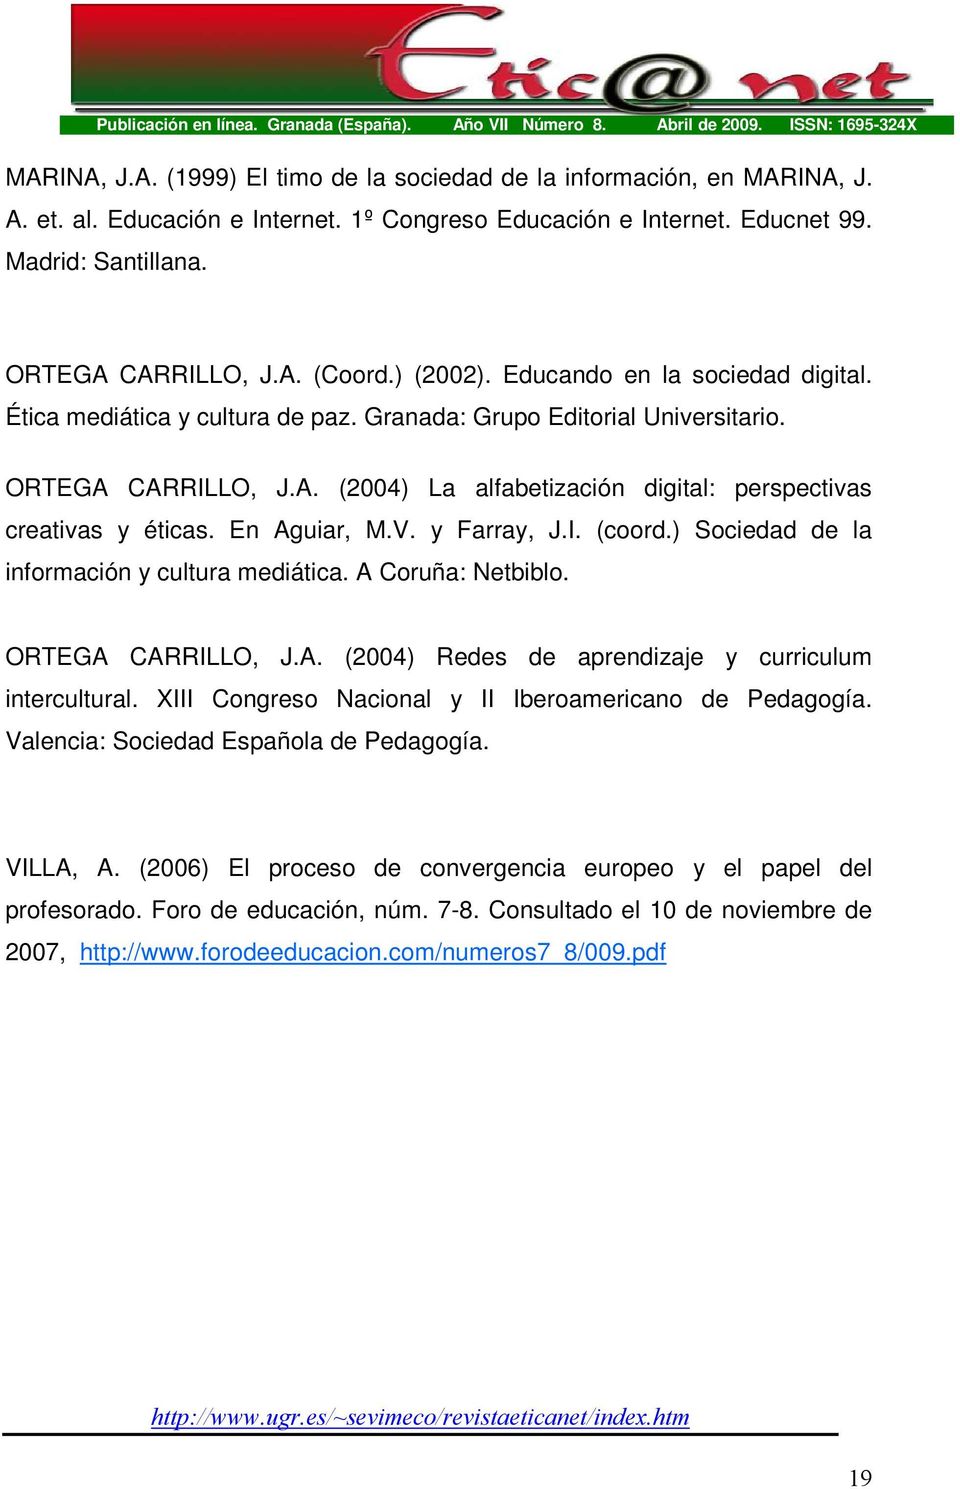 En Aguiar, M.V. y Farray, J.I. (coord.) Sociedad de la información y cultura mediática. A Coruña: Netbiblo. ORTEGA CARRILLO, J.A. (2004) Redes de aprendizaje y curriculum intercultural.